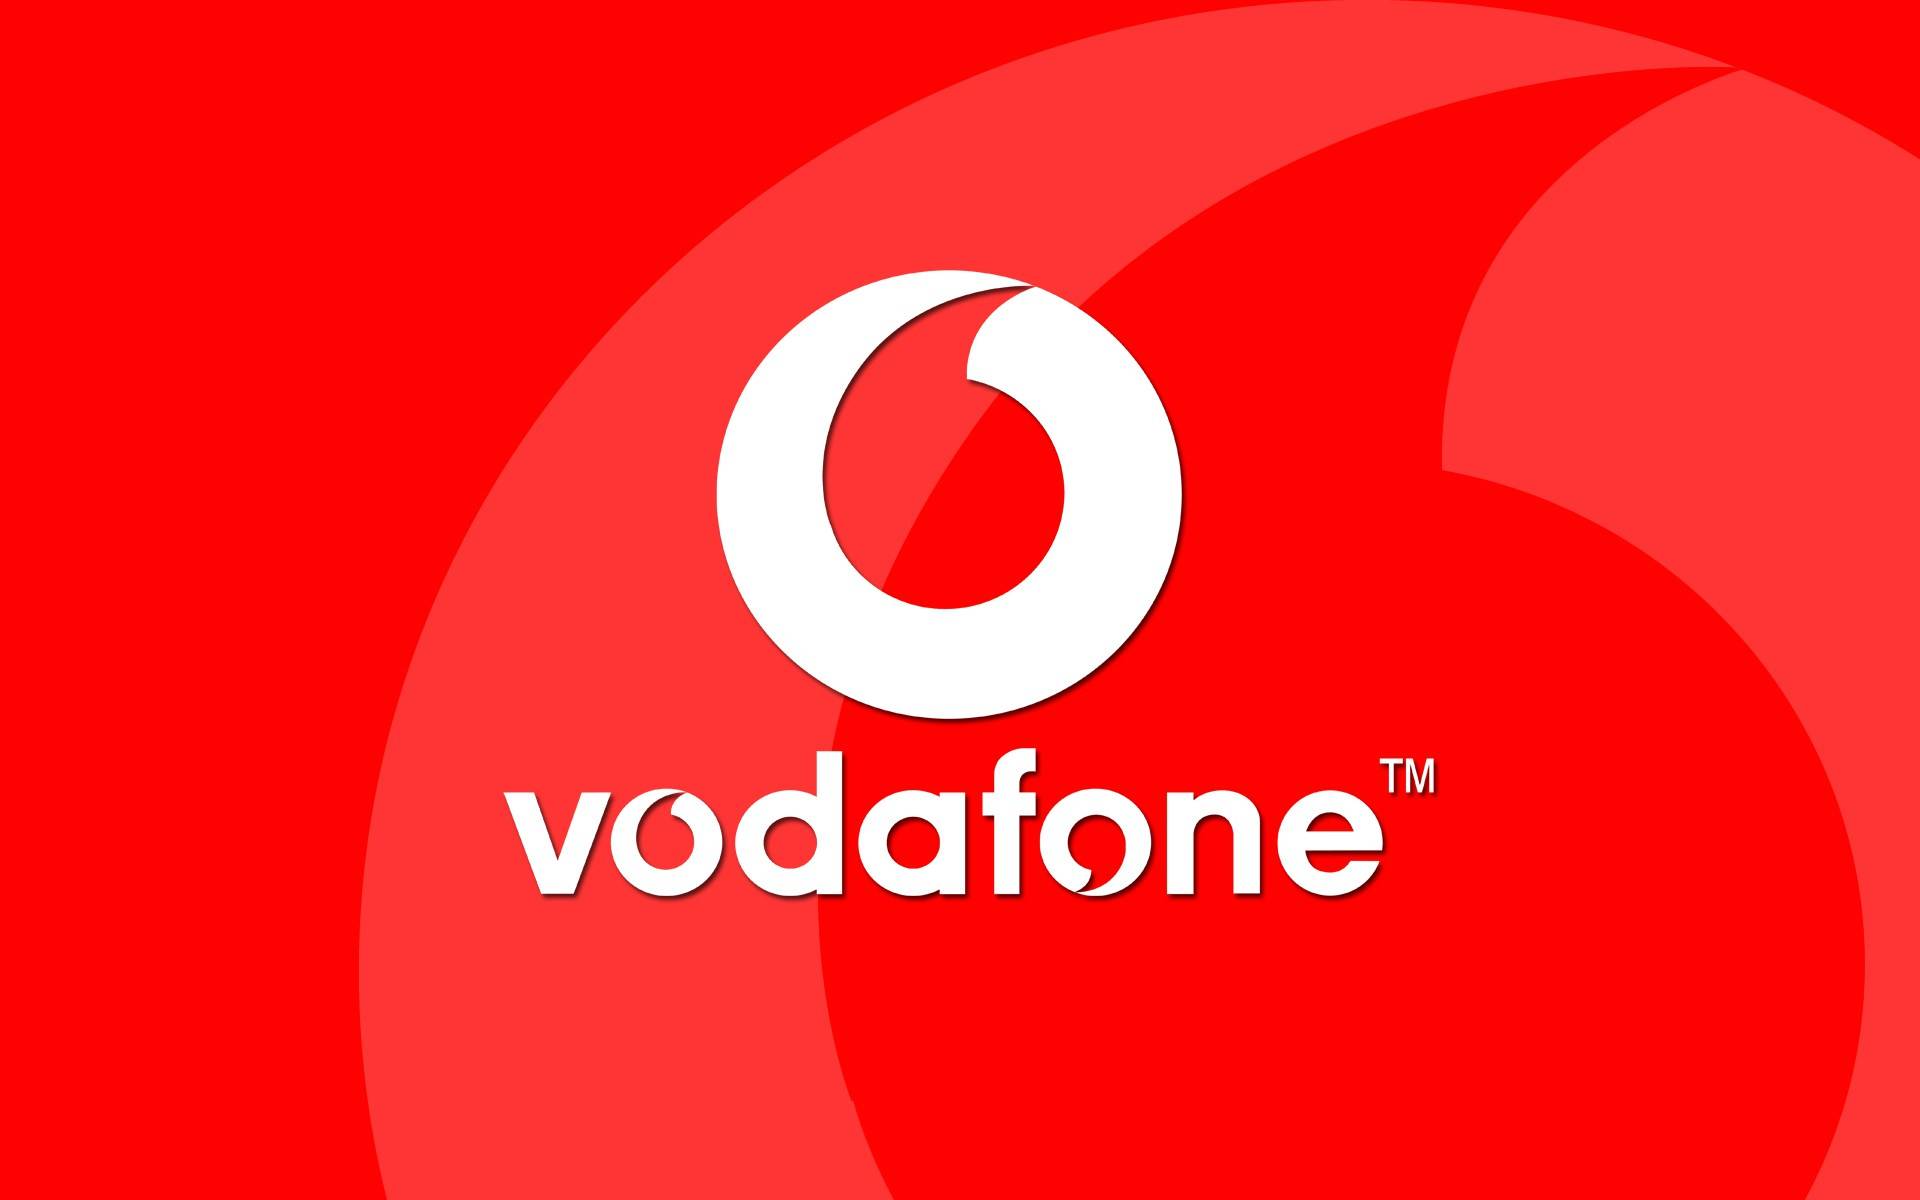 Vodafone. 2. September mit Smartphones, deren Preise VIEL reduziert sind